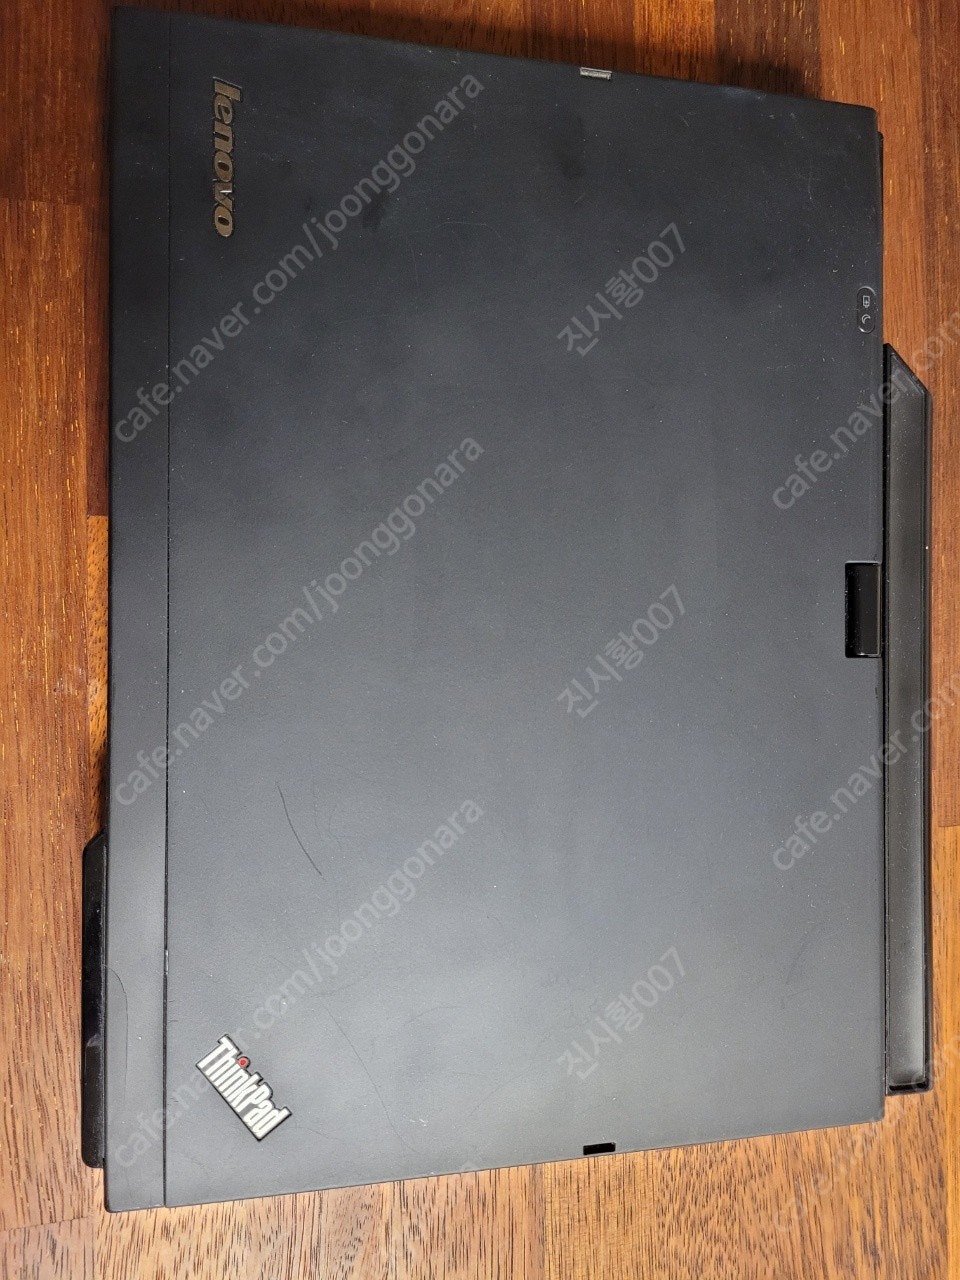 LENOVO 레노보 X220t i5 / 120ssd / 램 4GB 제품 판매